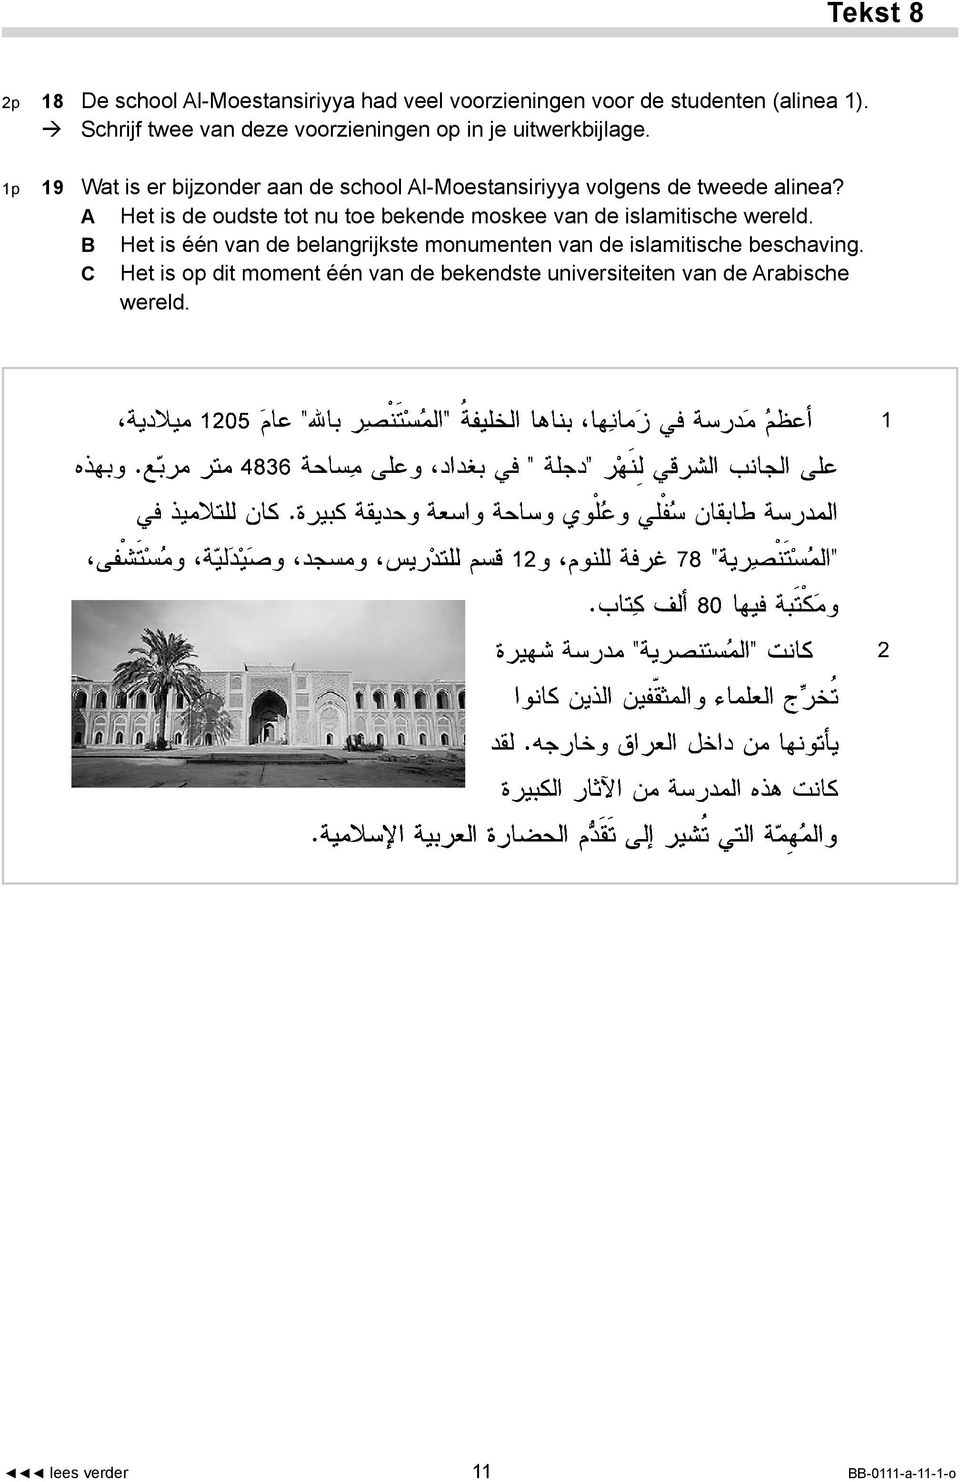 1p 19 Wat is er bijzonder aan de school Al-Moestansiriyya volgens de tweede alinea?